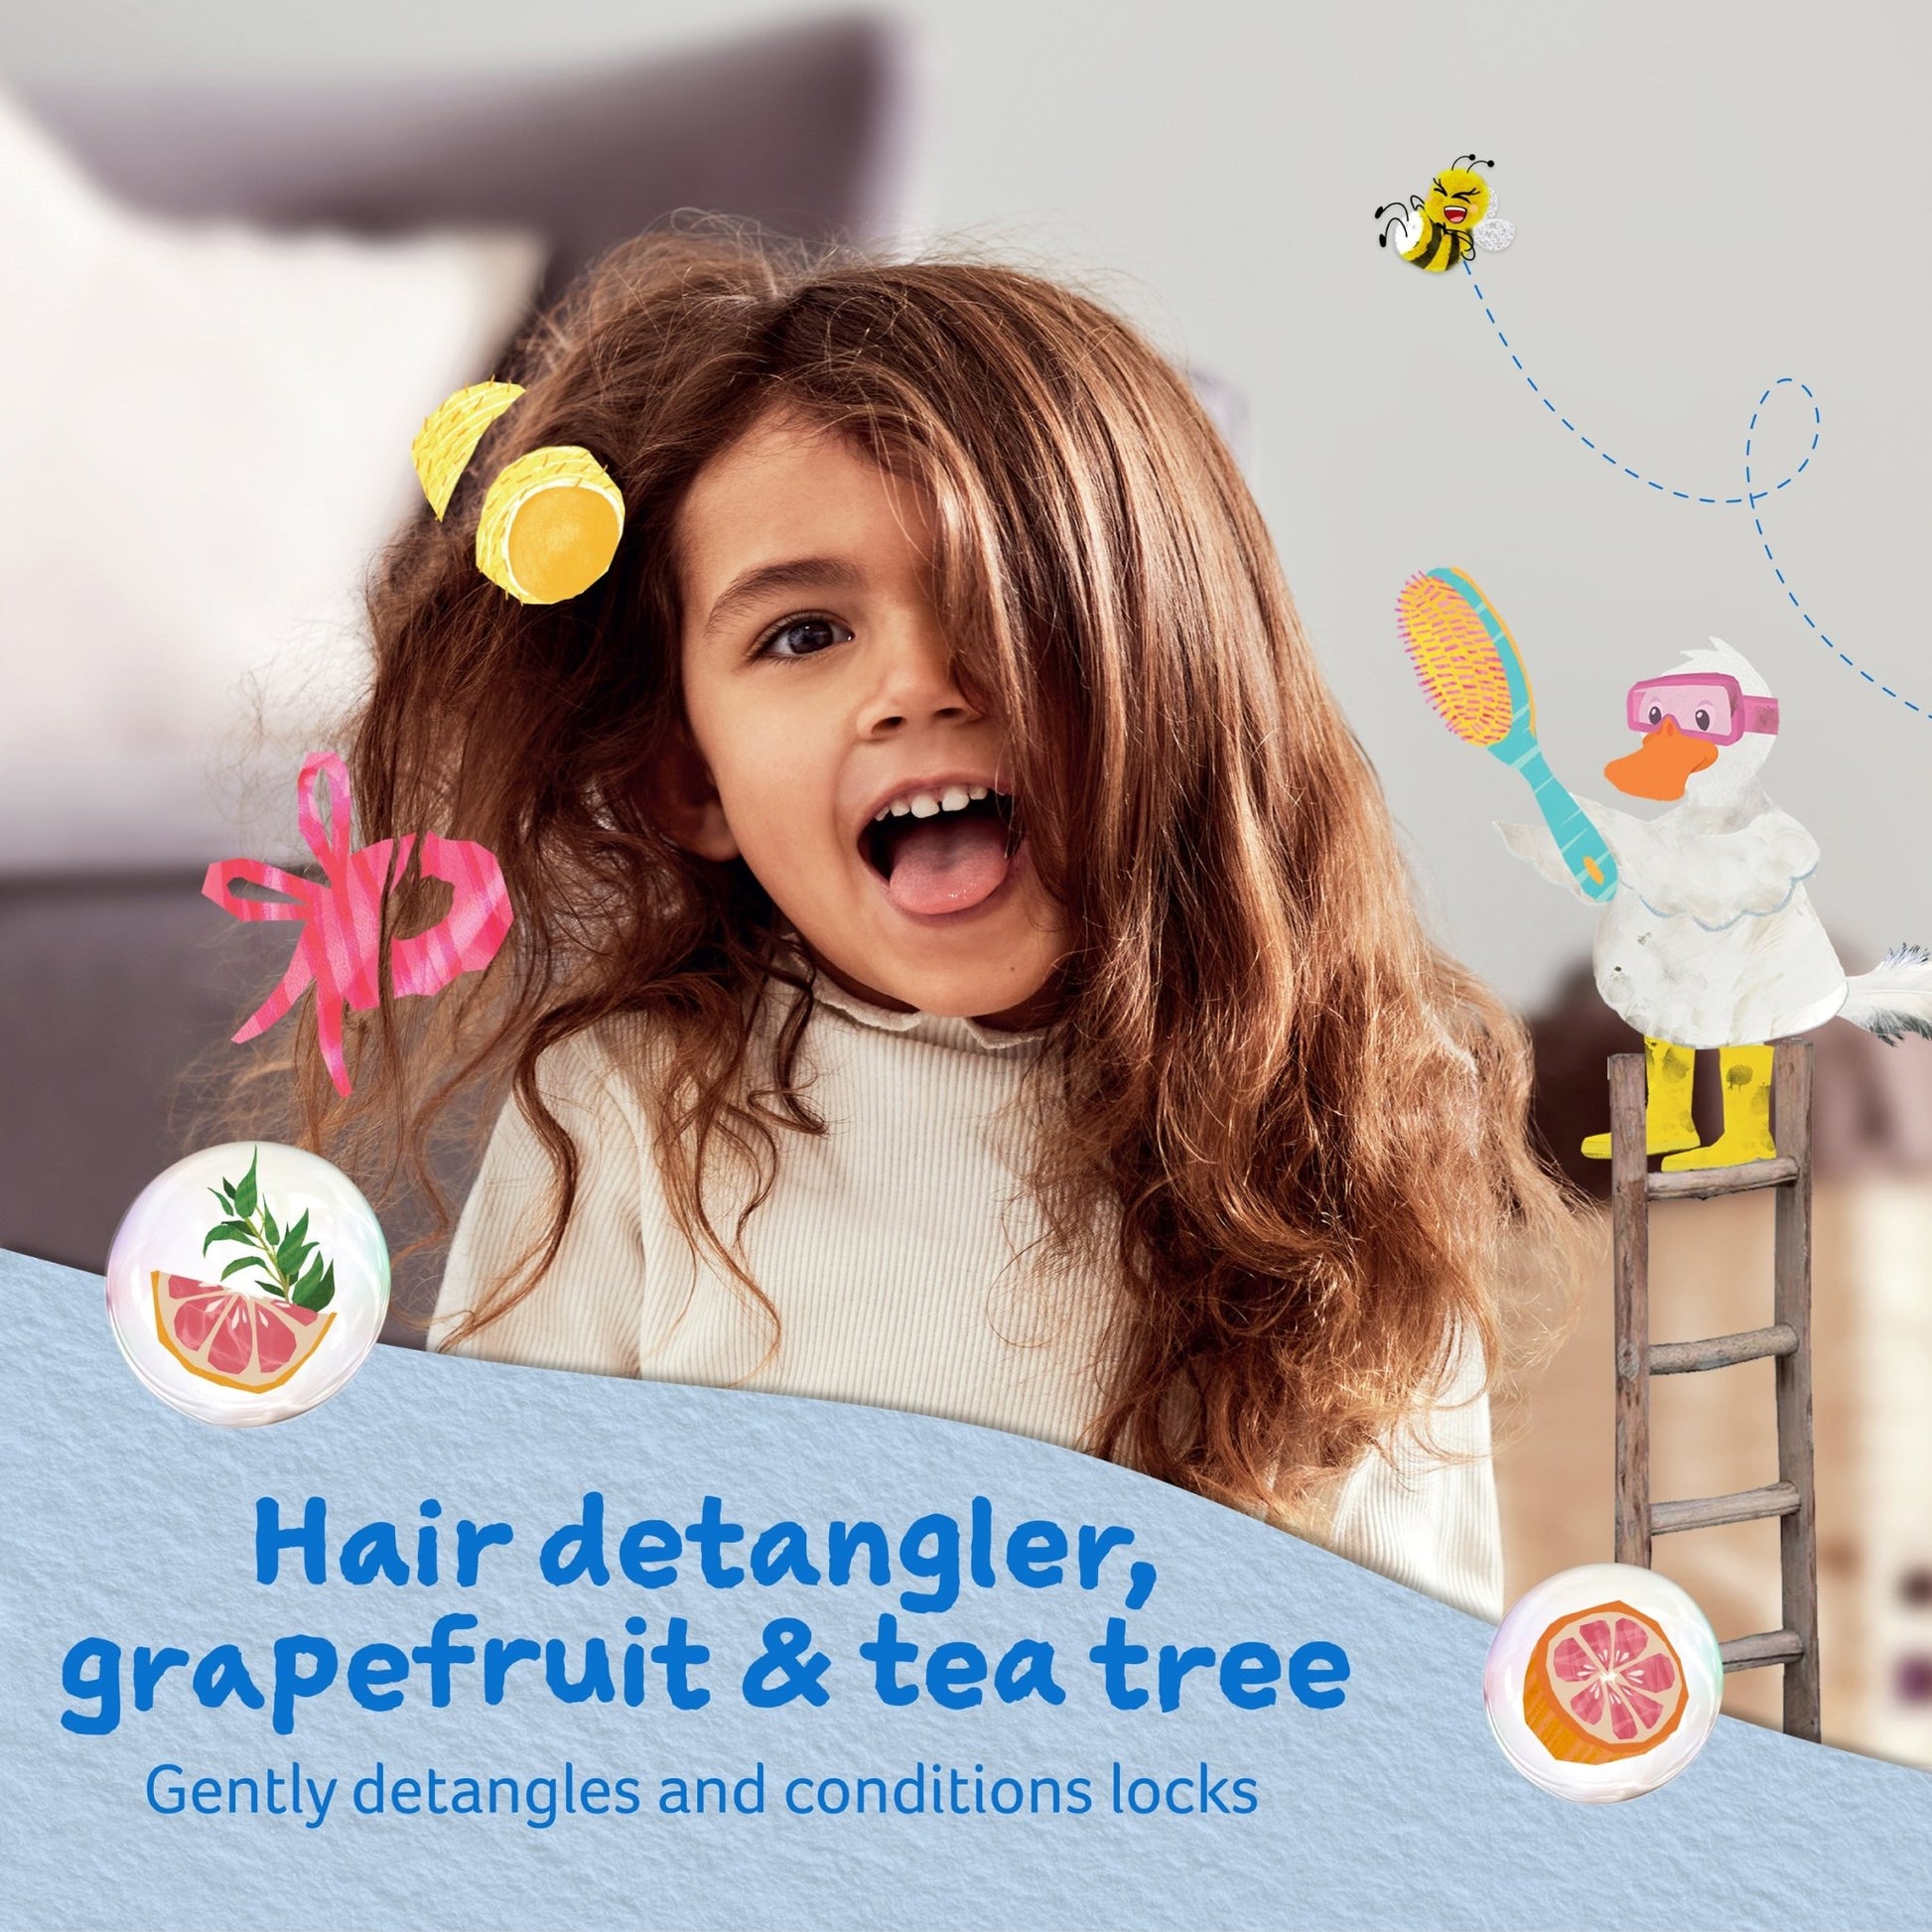 Childs Farm hair detangler grapefruit & organic tea tree